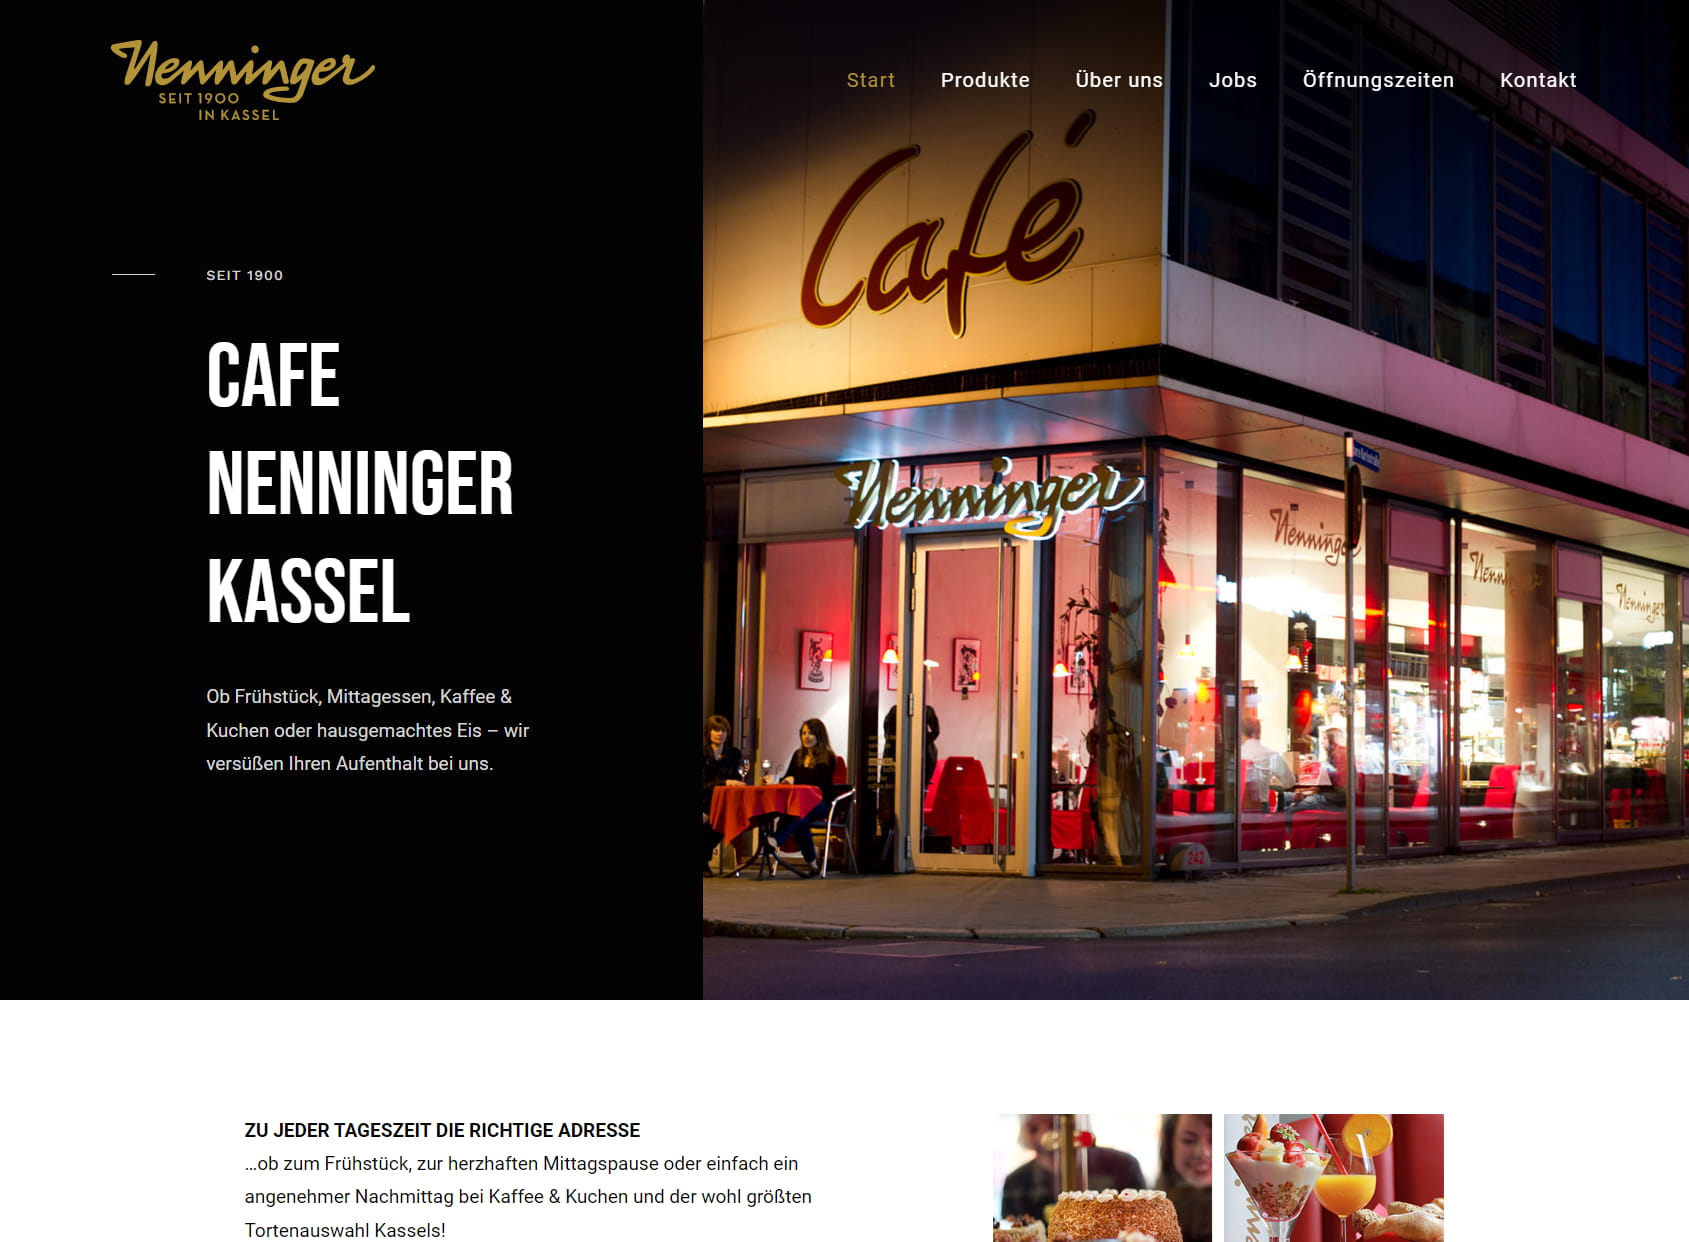 Café Conditorei Nenninger